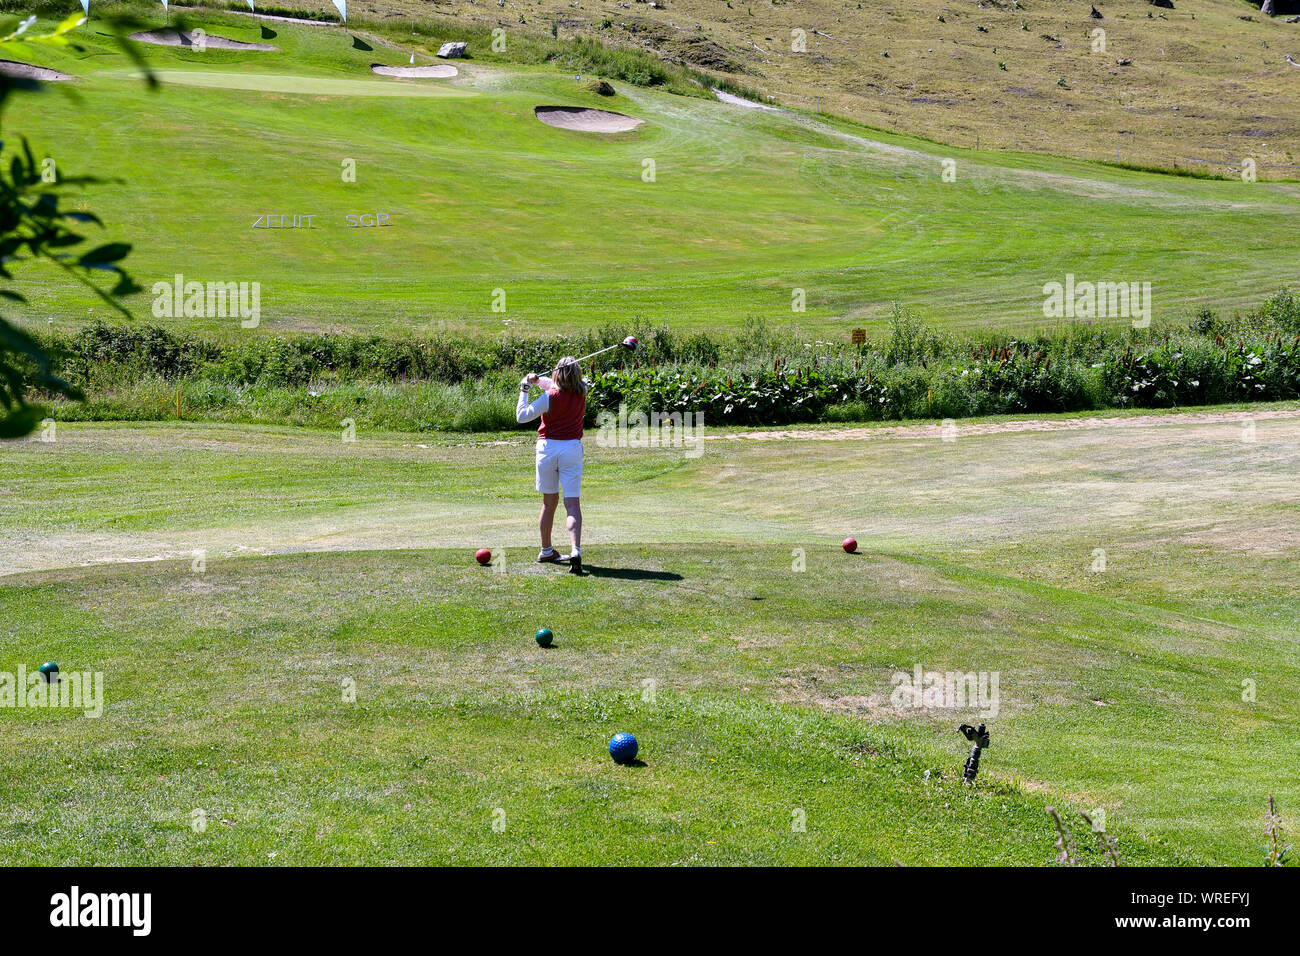 Una mujer de mediana edad jugando al golf en el Golf Club Courmayeur y Grandes Jorasses de Val Ferret, un valle al pie del macizo del Mont Blanc, Alpes, Italia Foto de stock